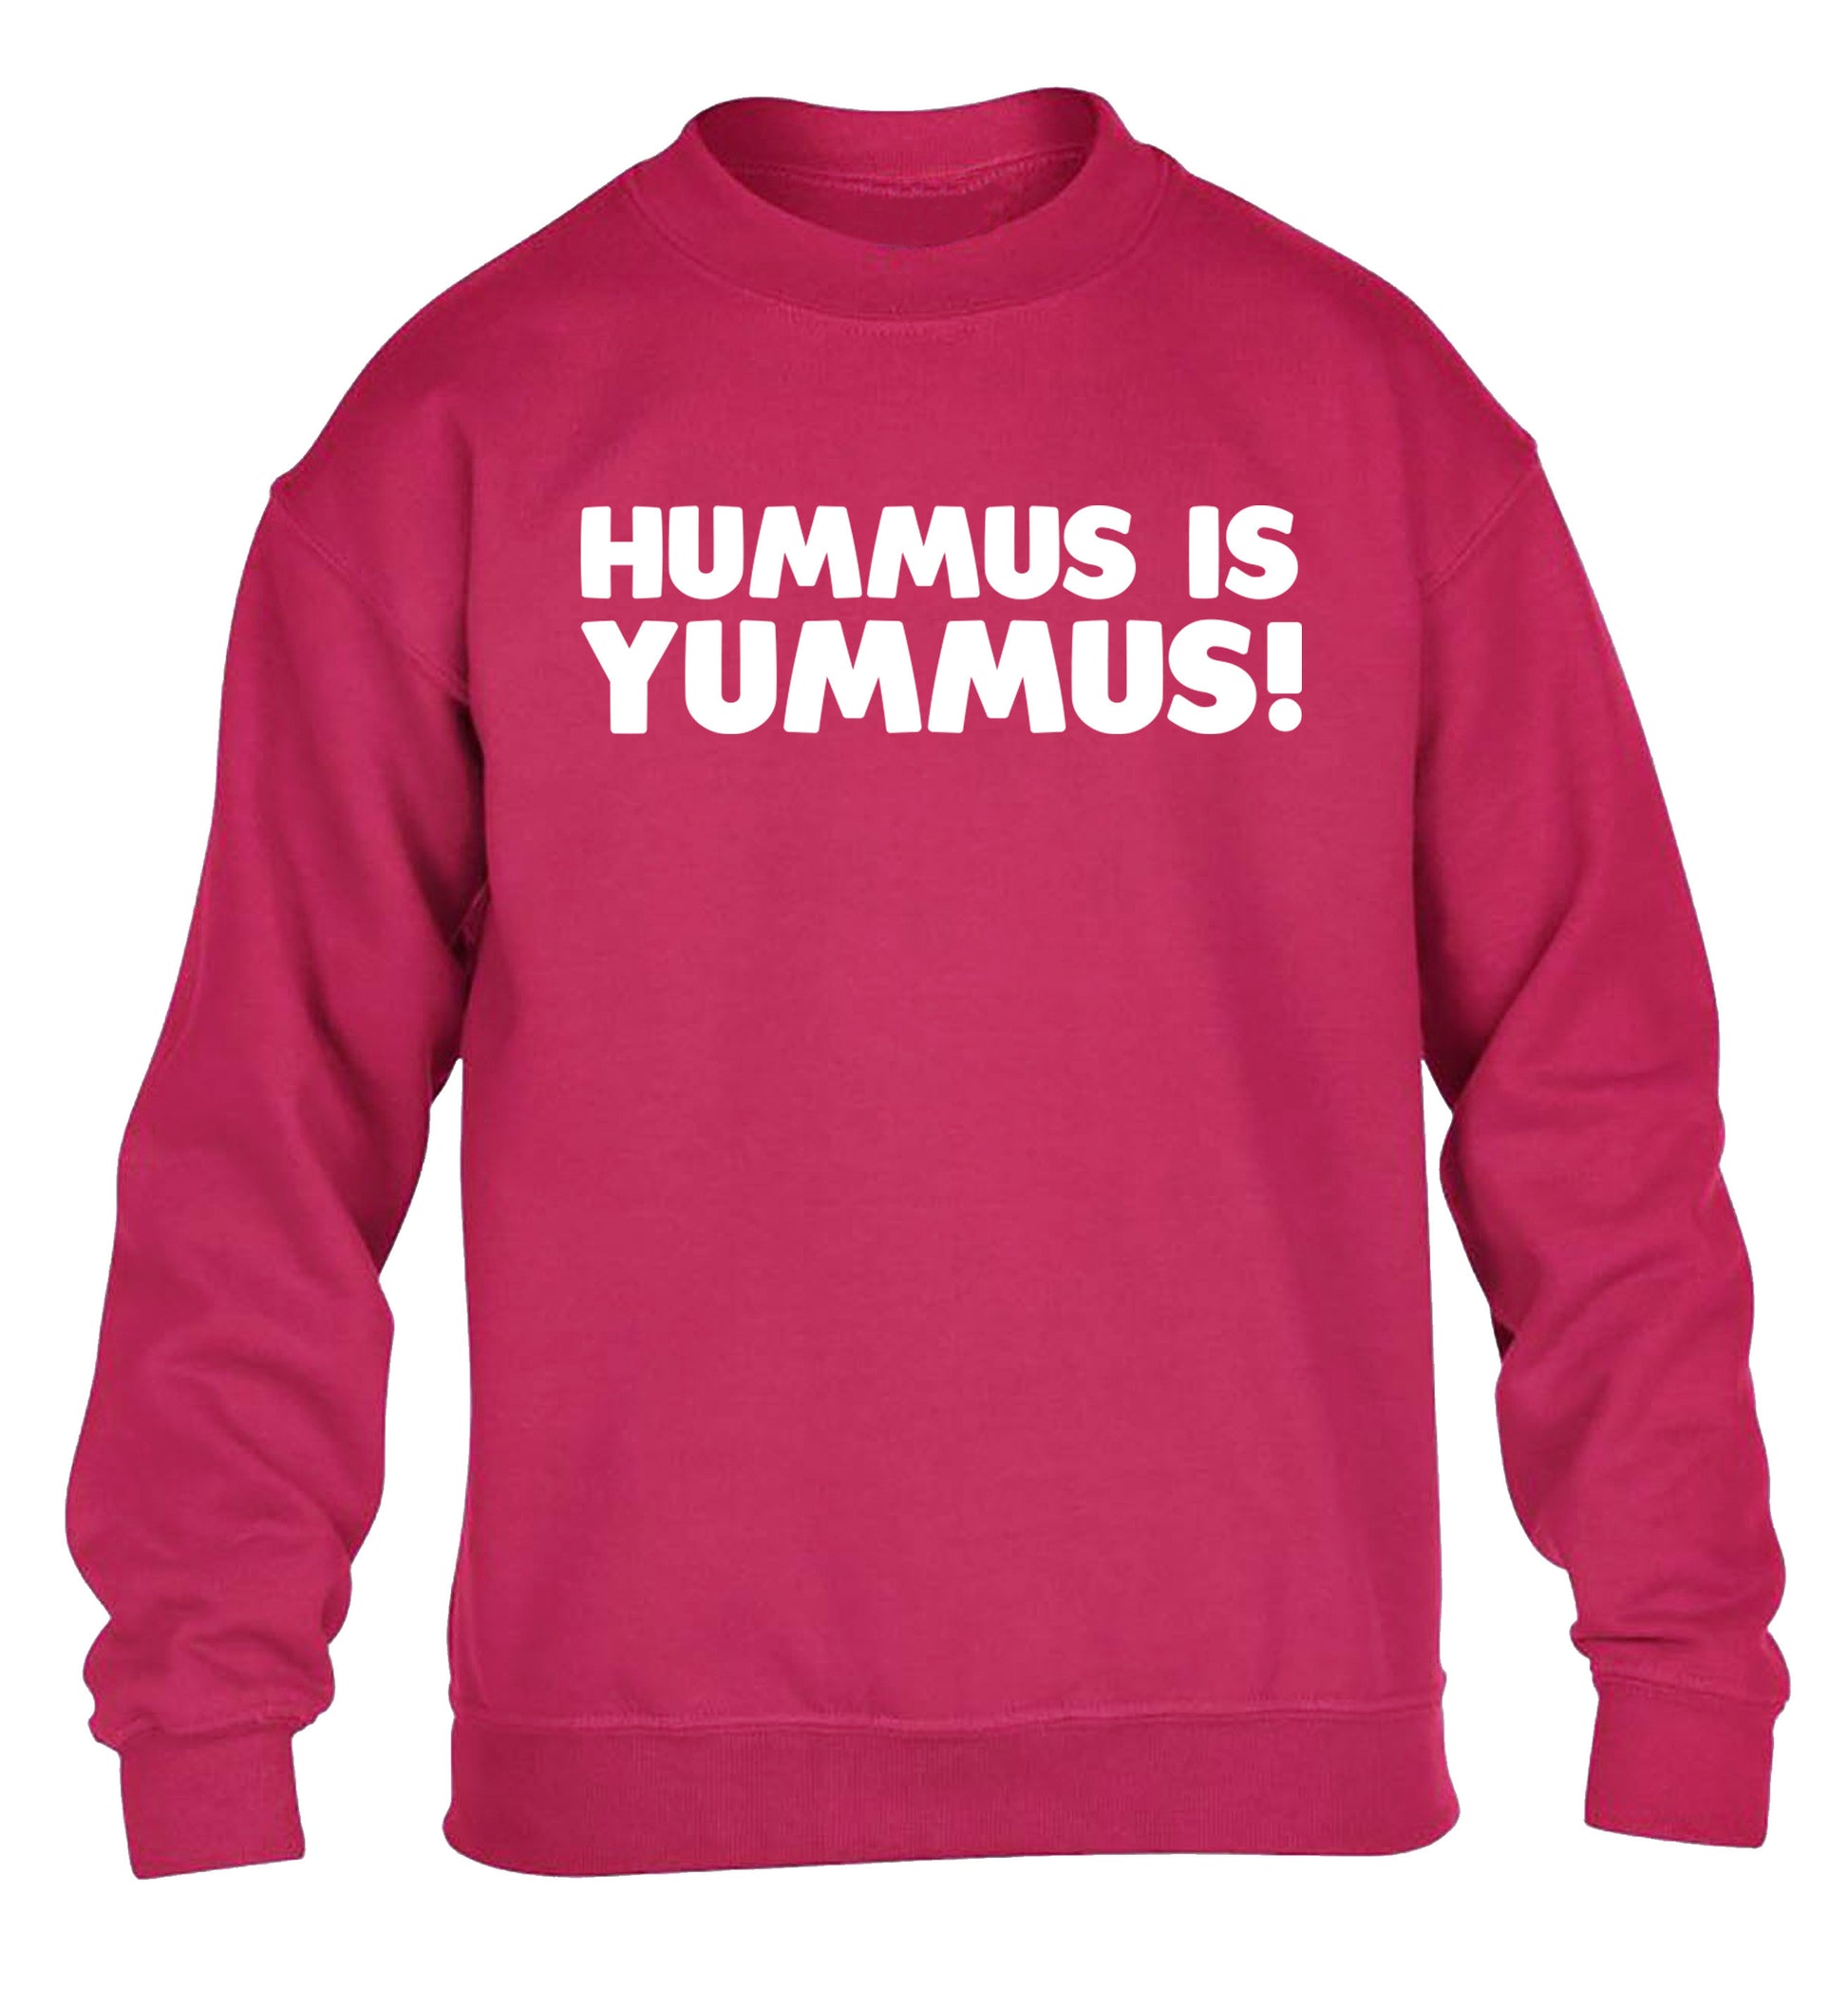 Hummus is Yummus  children's pink sweater 12-14 Years